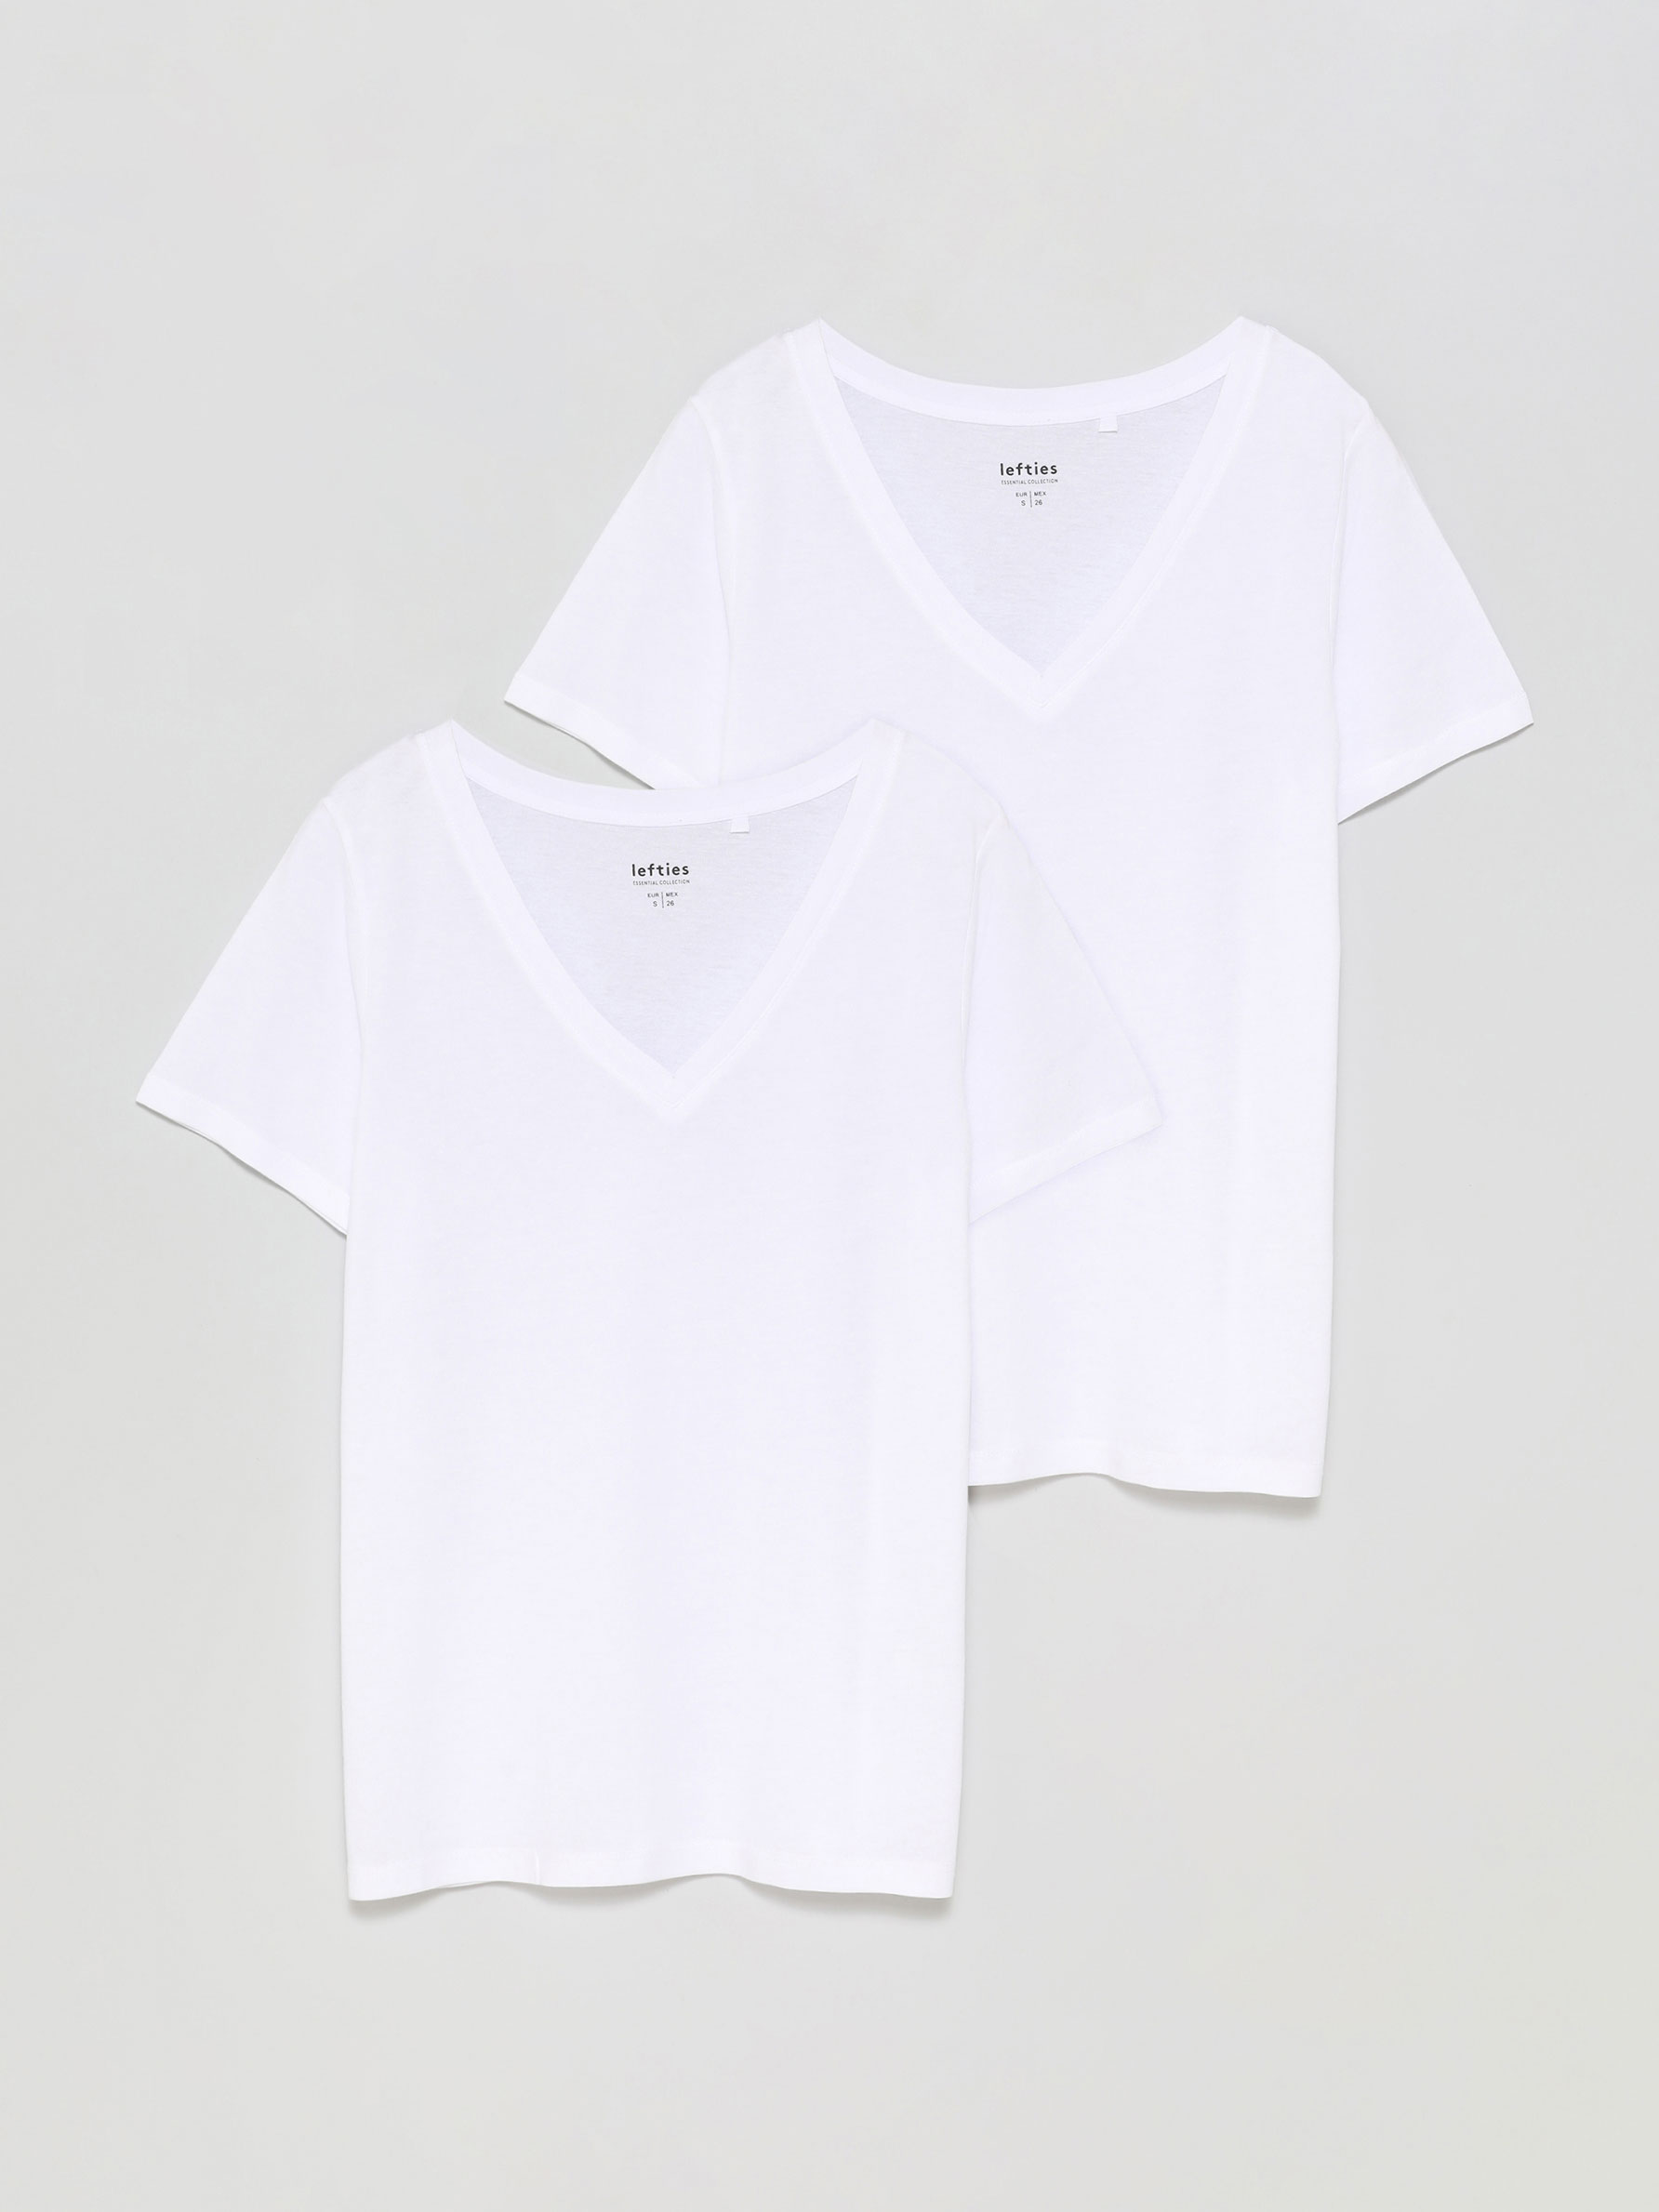 administración taburete Eclipse solar Pack de 2 camisetas básicas con escote en pico - Camisetas Básicas -  Camisetas - ROPA - Mujer - | Lefties Mexico